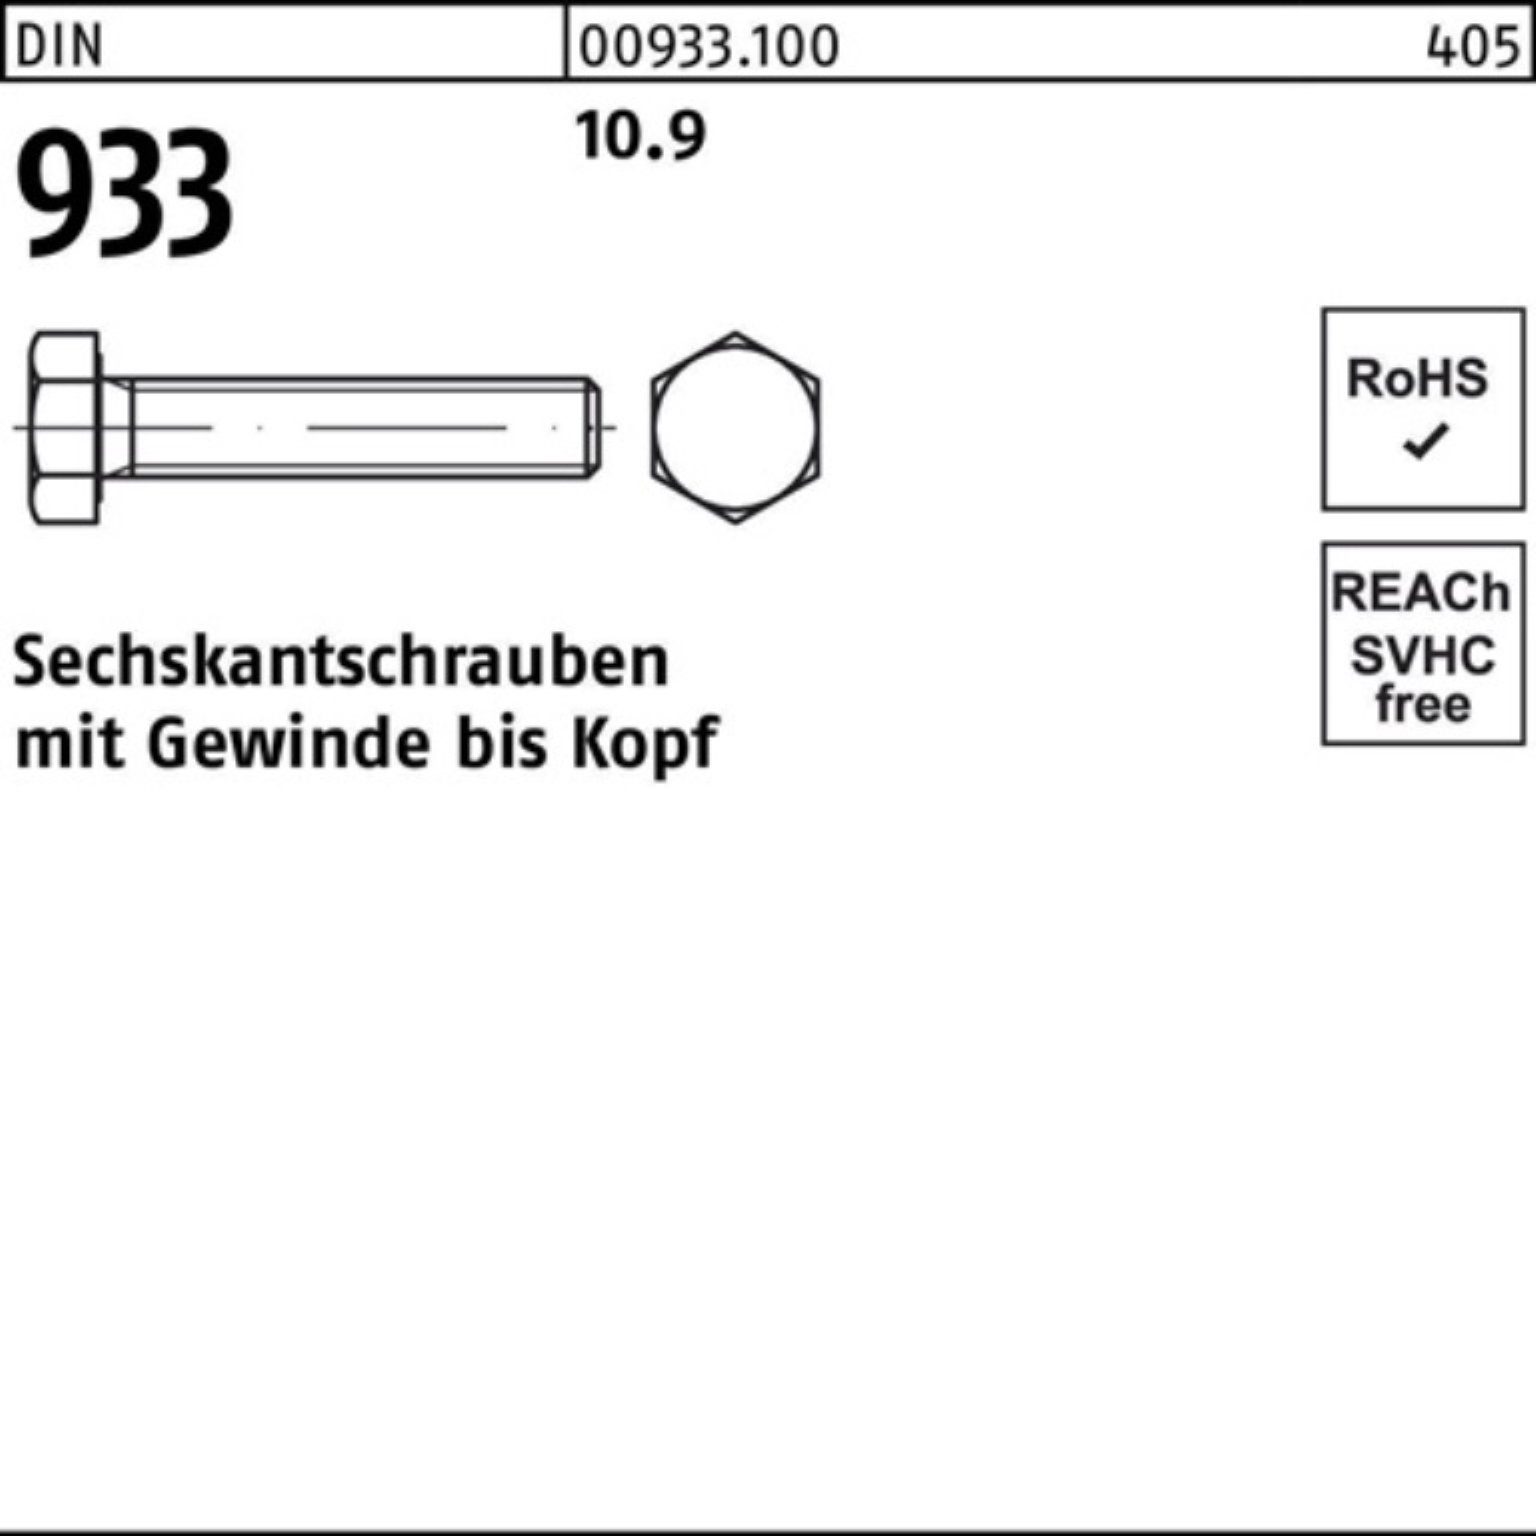 933 Sechskantschraube Reyher DIN Pack Sechskantschraube M8x VG 933 Stück 200er 10.9 DIN 200 60